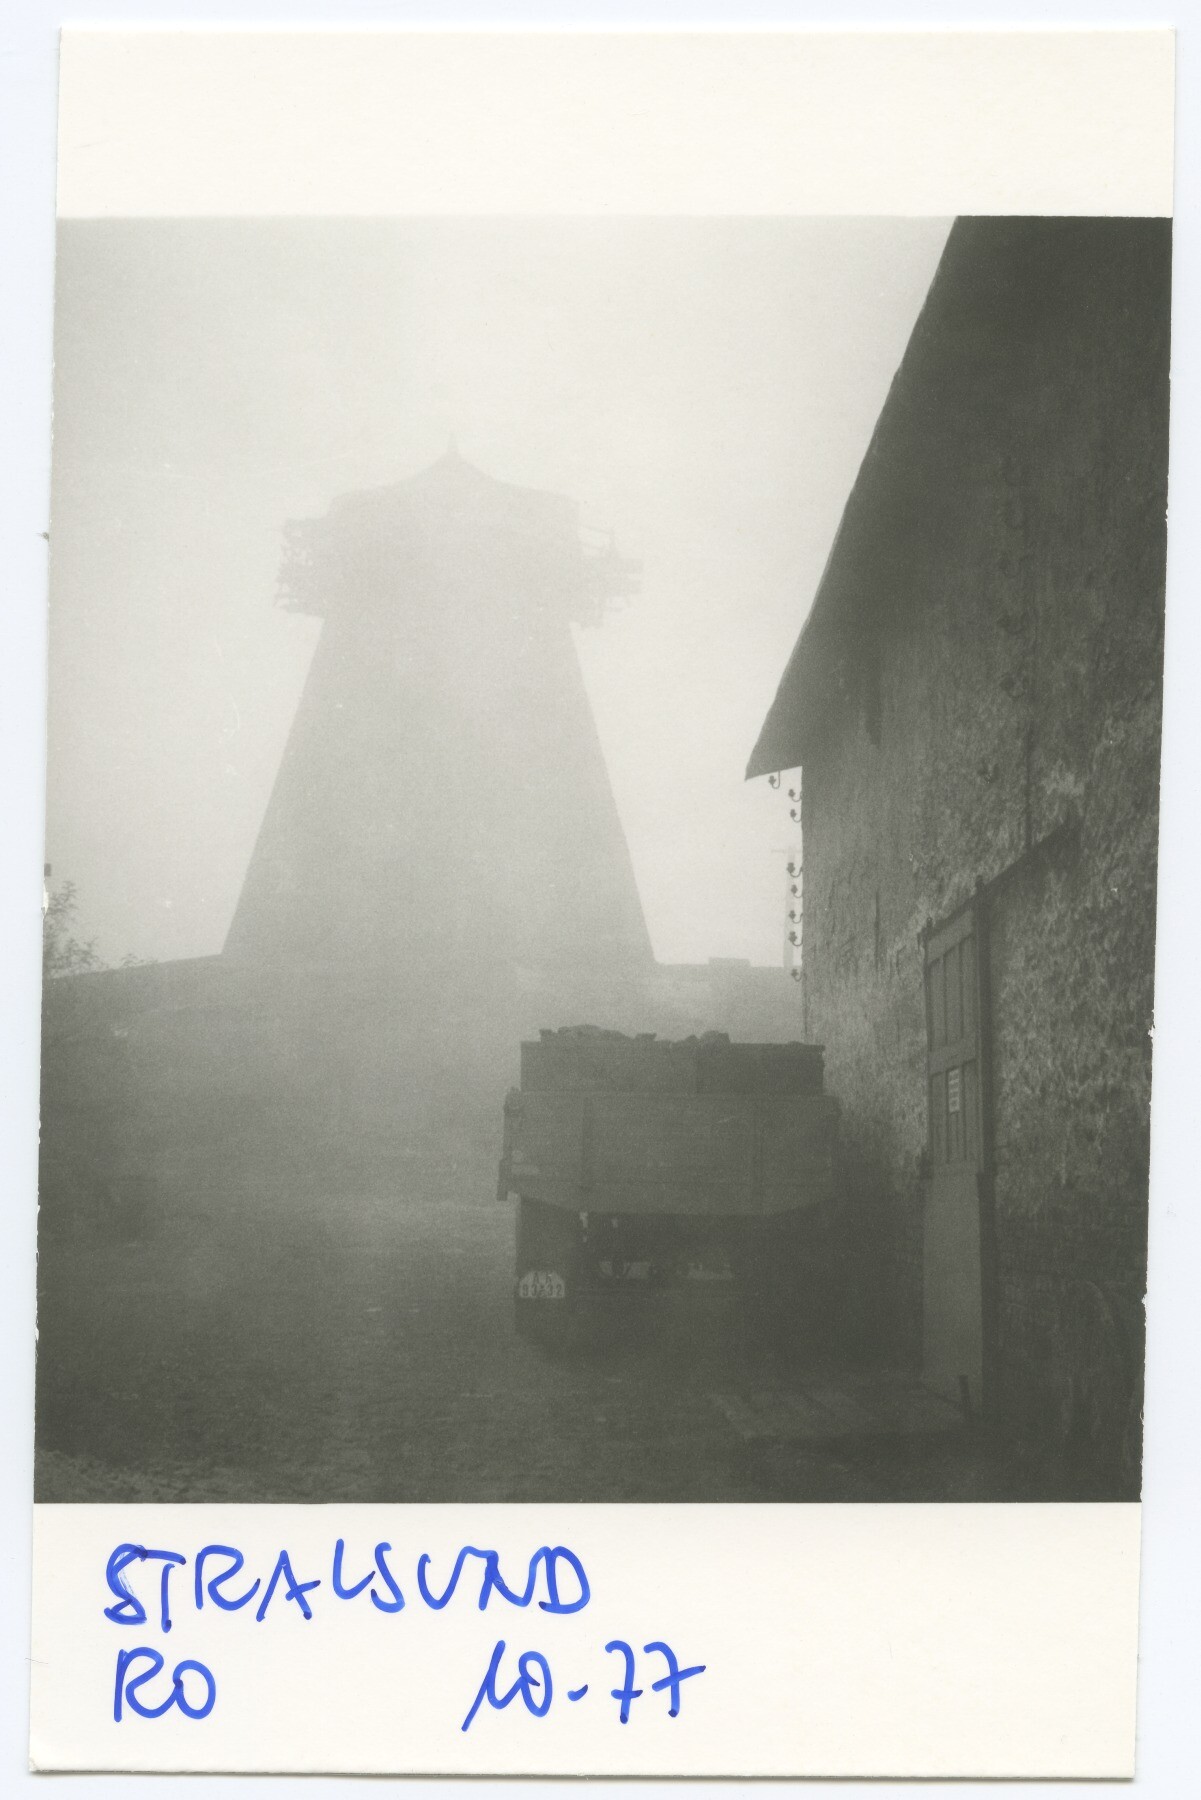 Turmholländerwindmühle Stralsund (Historische Mühle von Sanssouci CC BY-NC-ND)